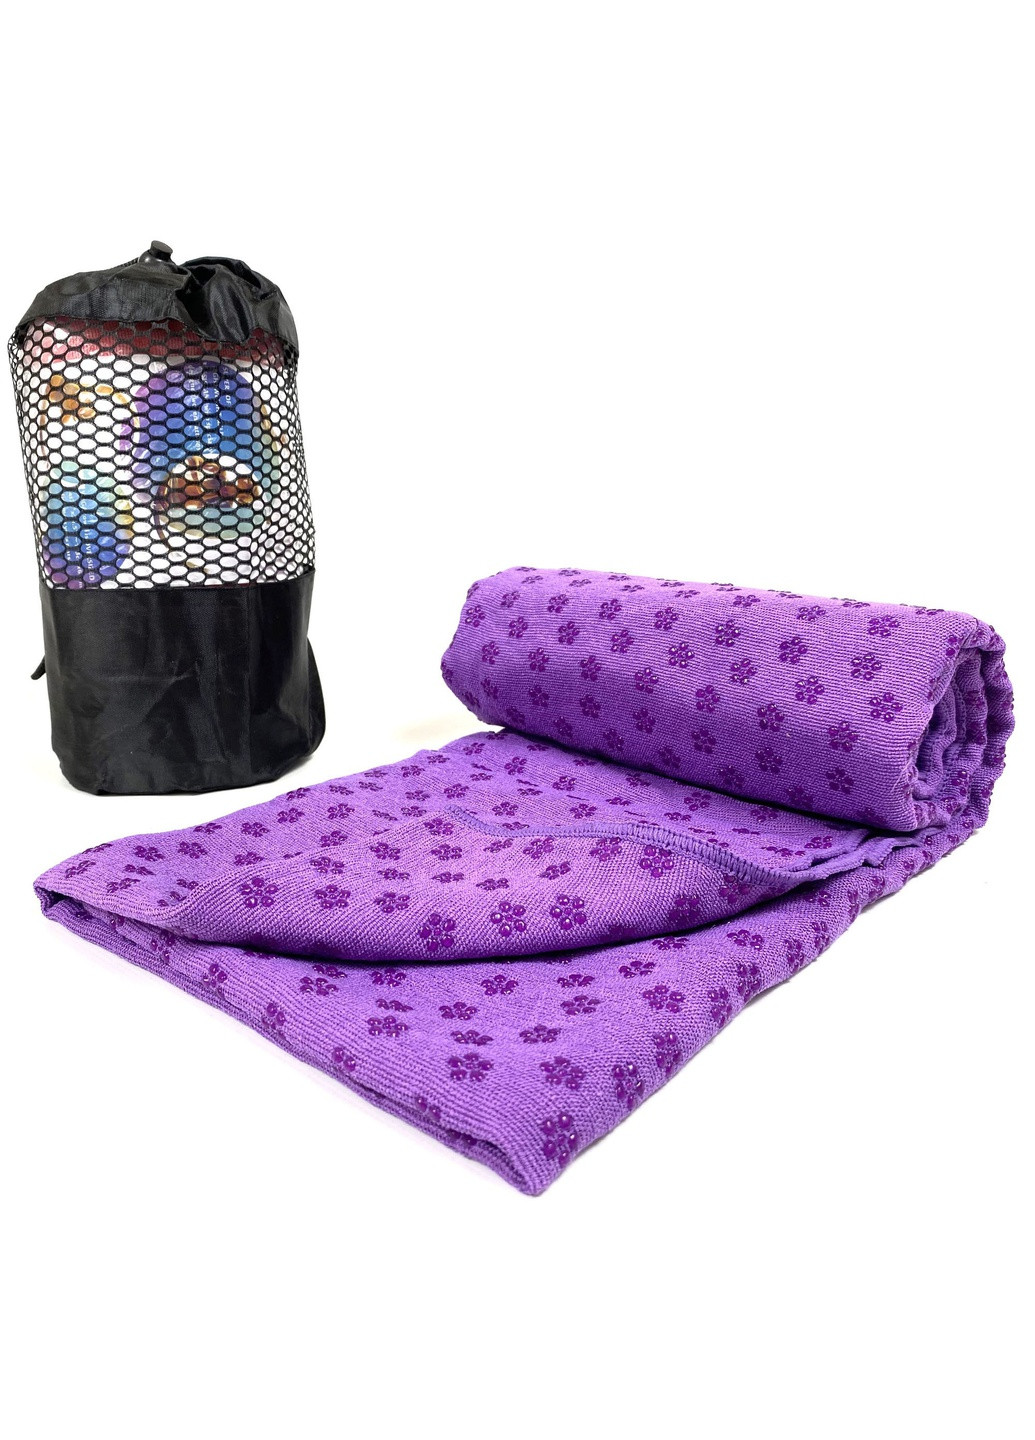 Полотенце на коврик для йоги фиолетовое (гигиеническое, антибактериальное, влагопоглощающее для фитнеса и пилатеса) EasyFit (241229829)